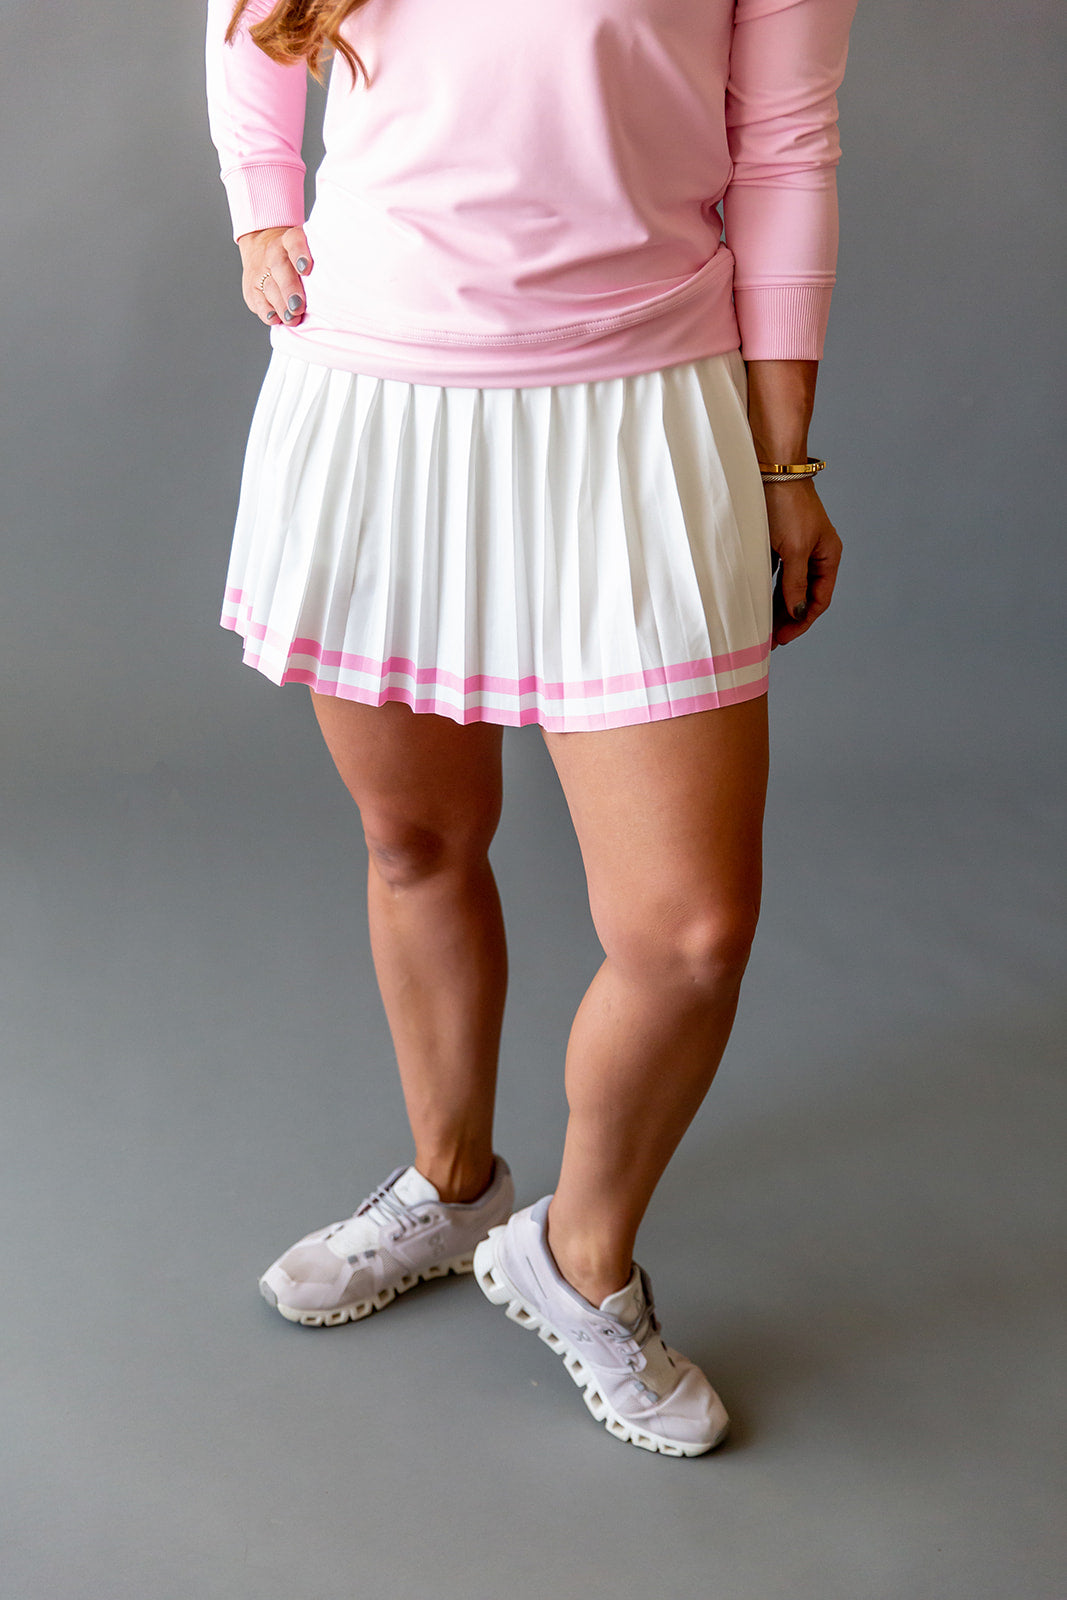 Details Skirt- pink stripes